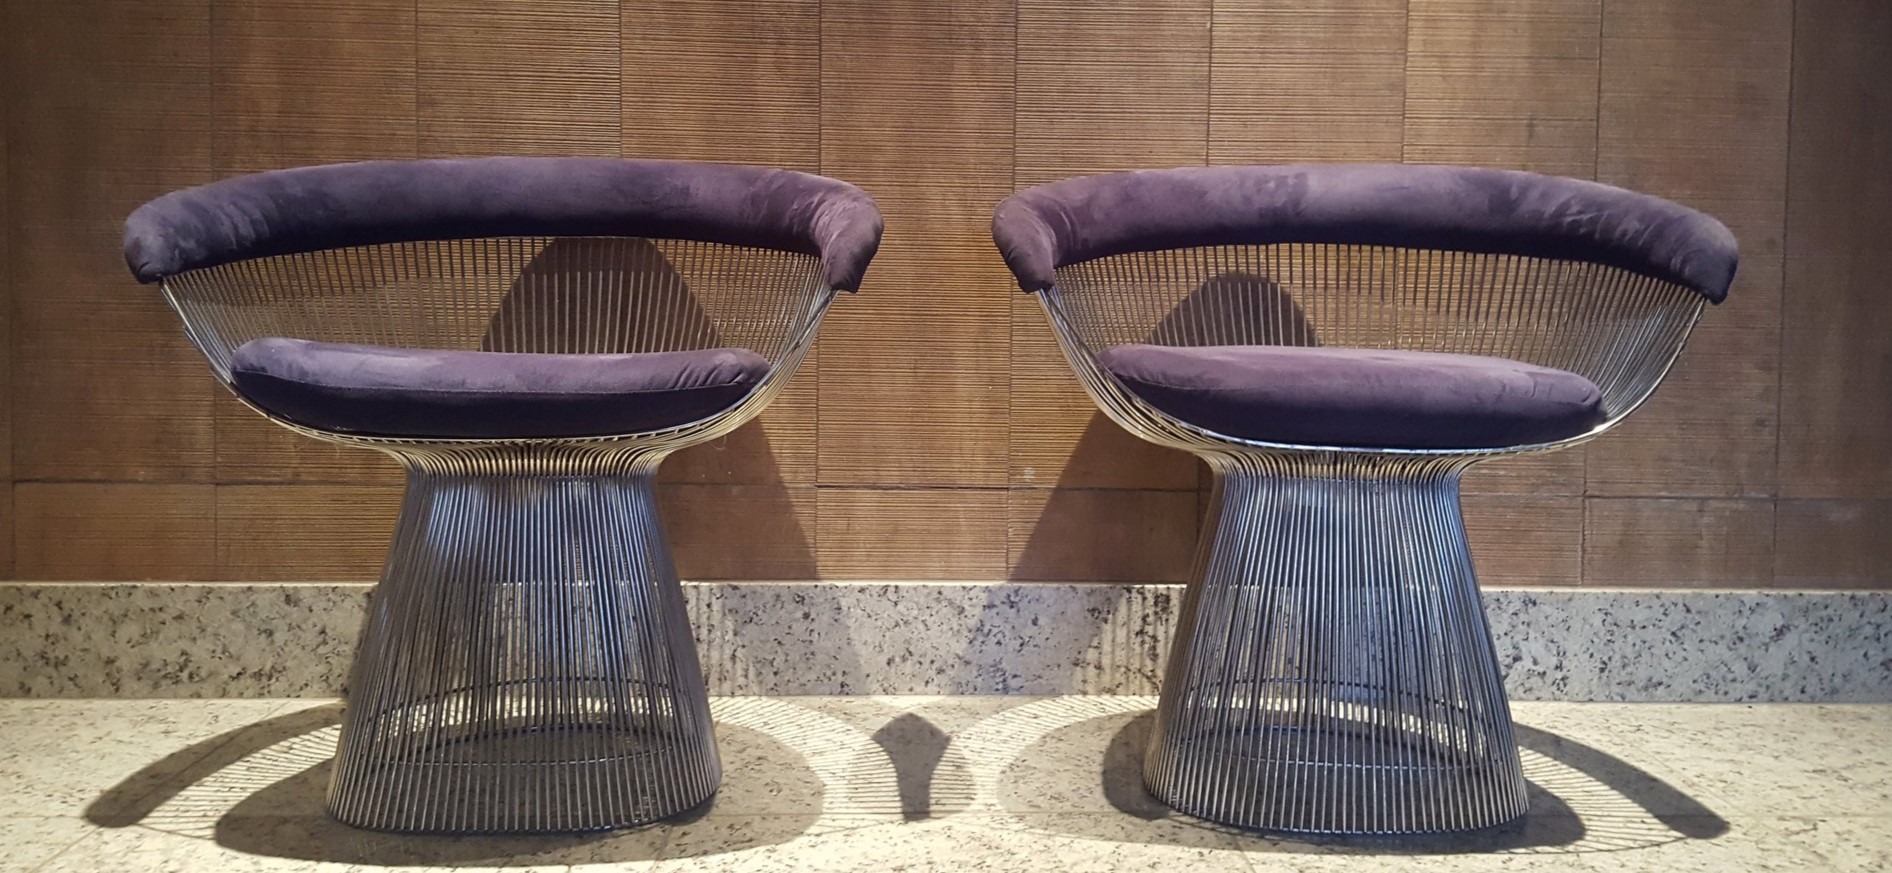 Кресла с фиолетовыми вставками можно поставить в прихожей